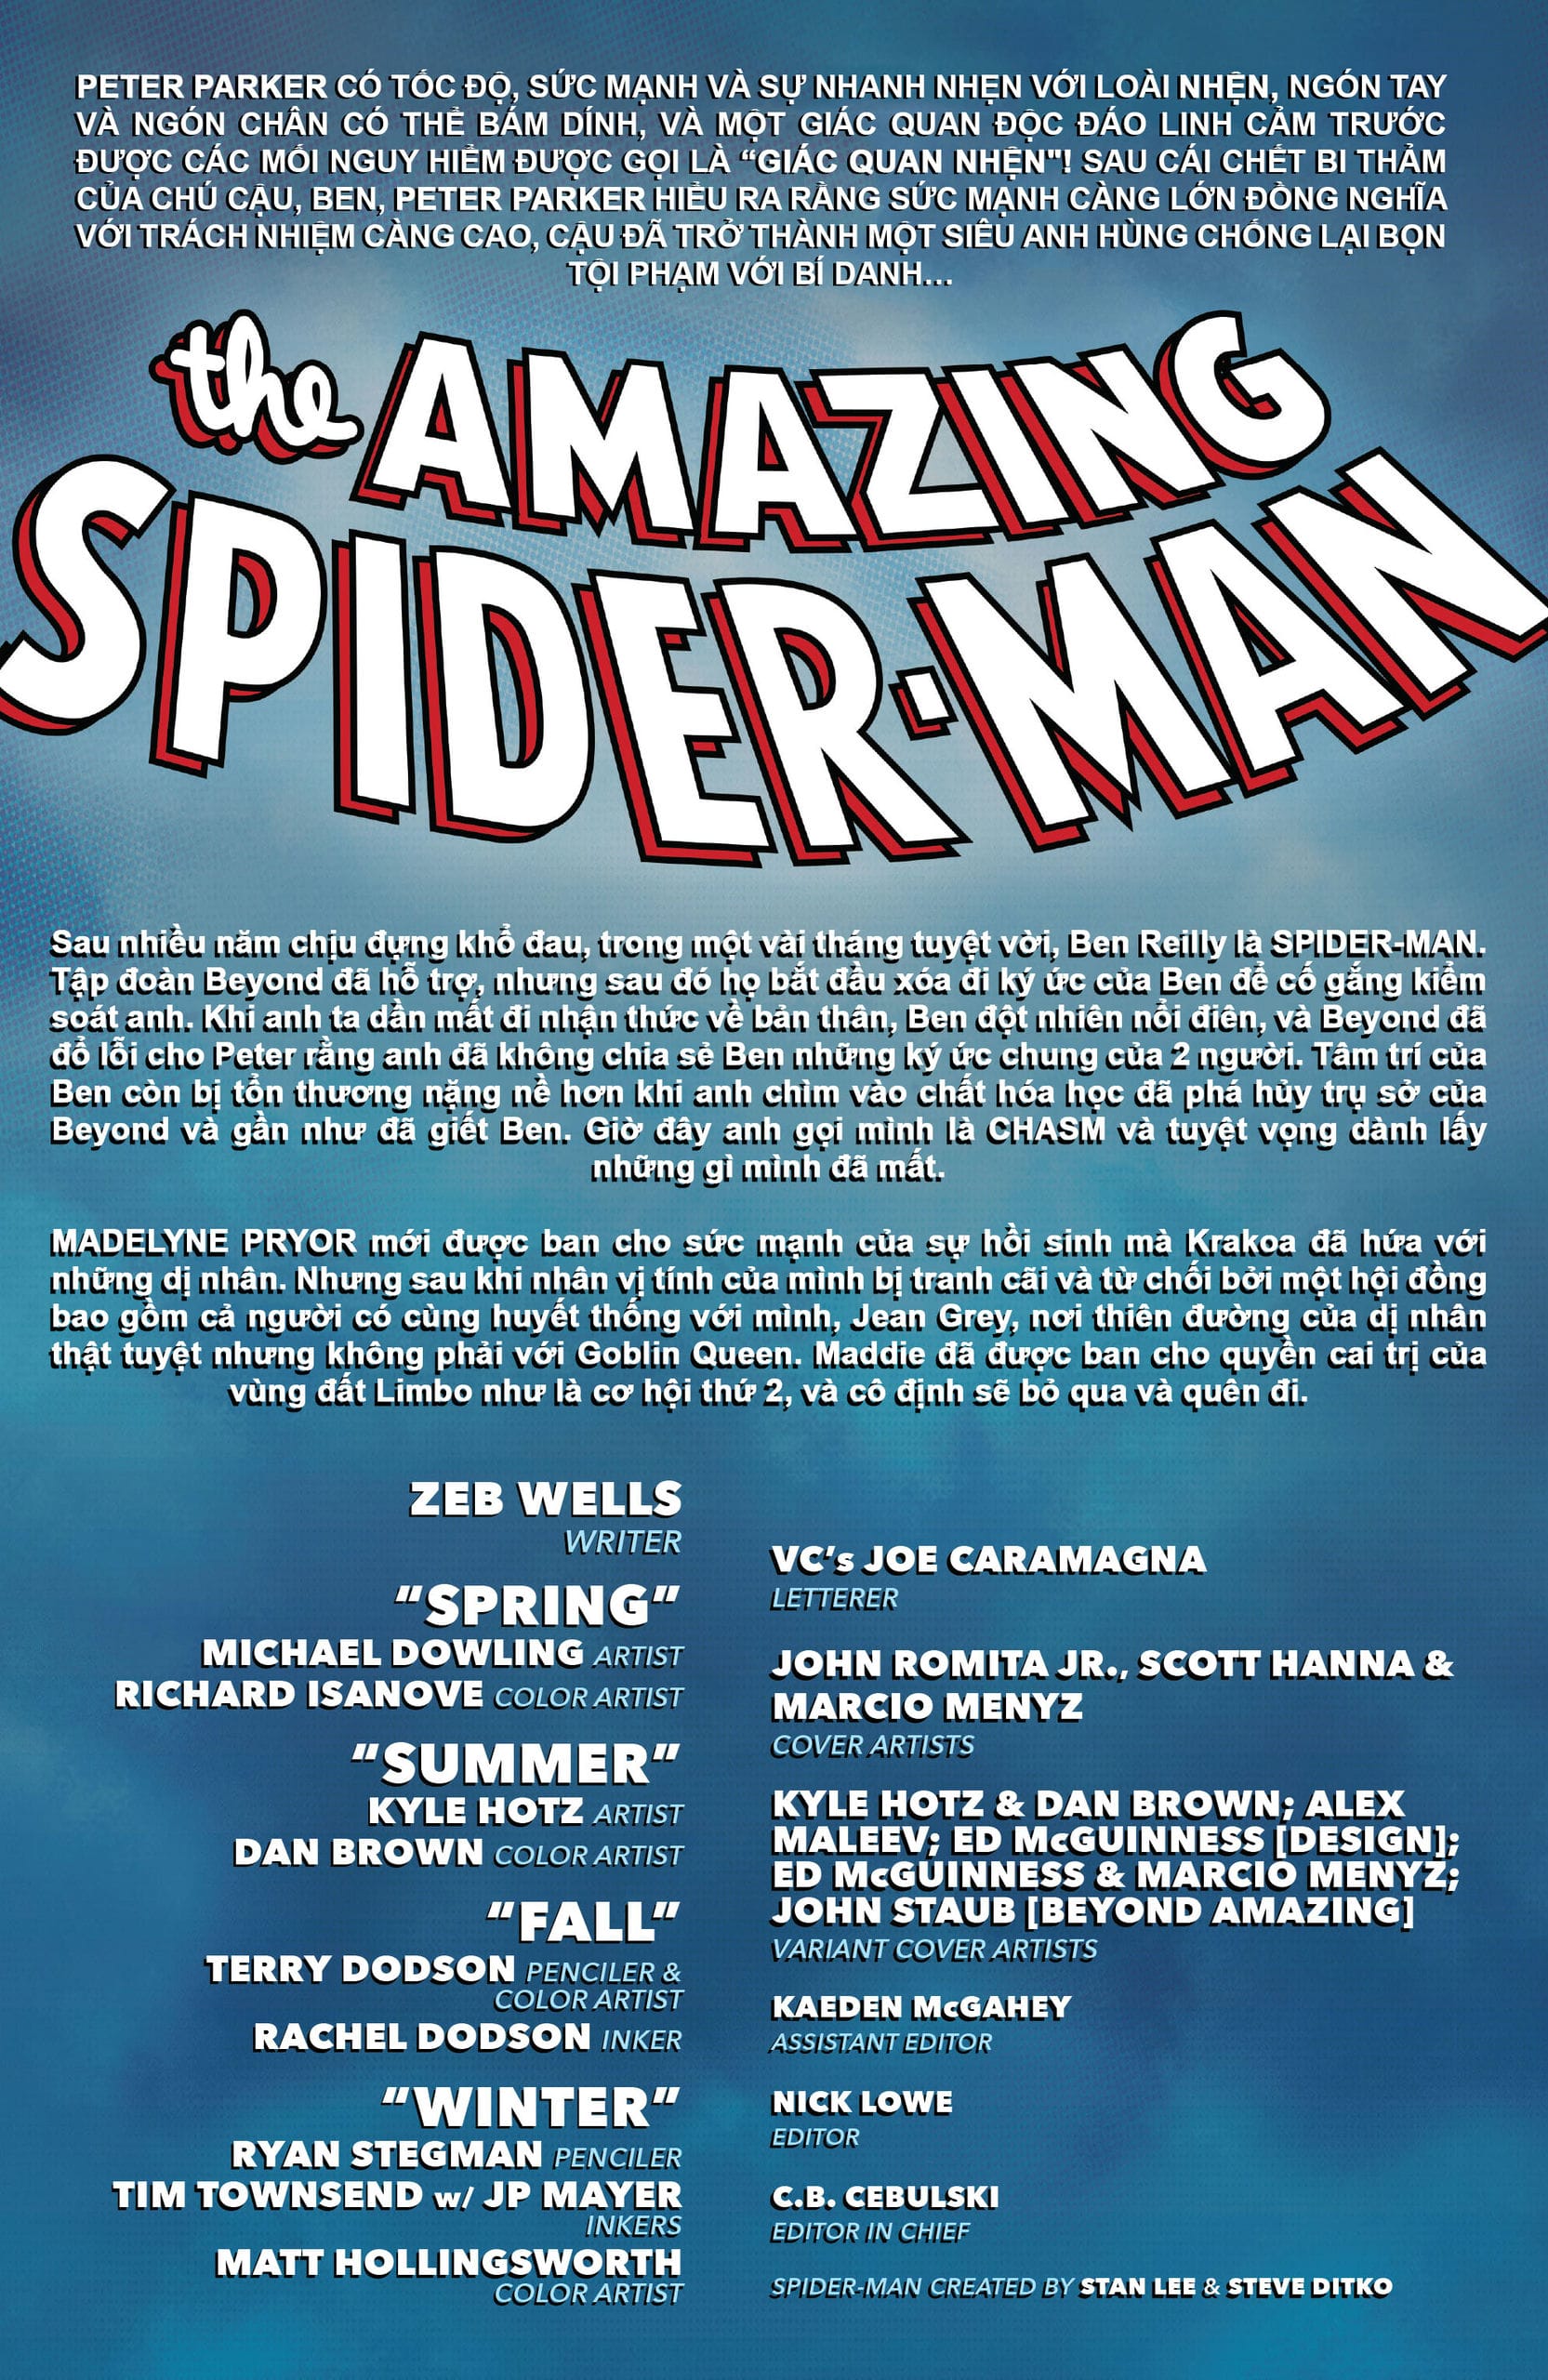 https://langgeek.net/wp-content/webpc-passthru.php?src=https://langgeek.net/wp-content/uploads/2023/03/Amazing-Spider-Man-014-001.jpg&nocache=1